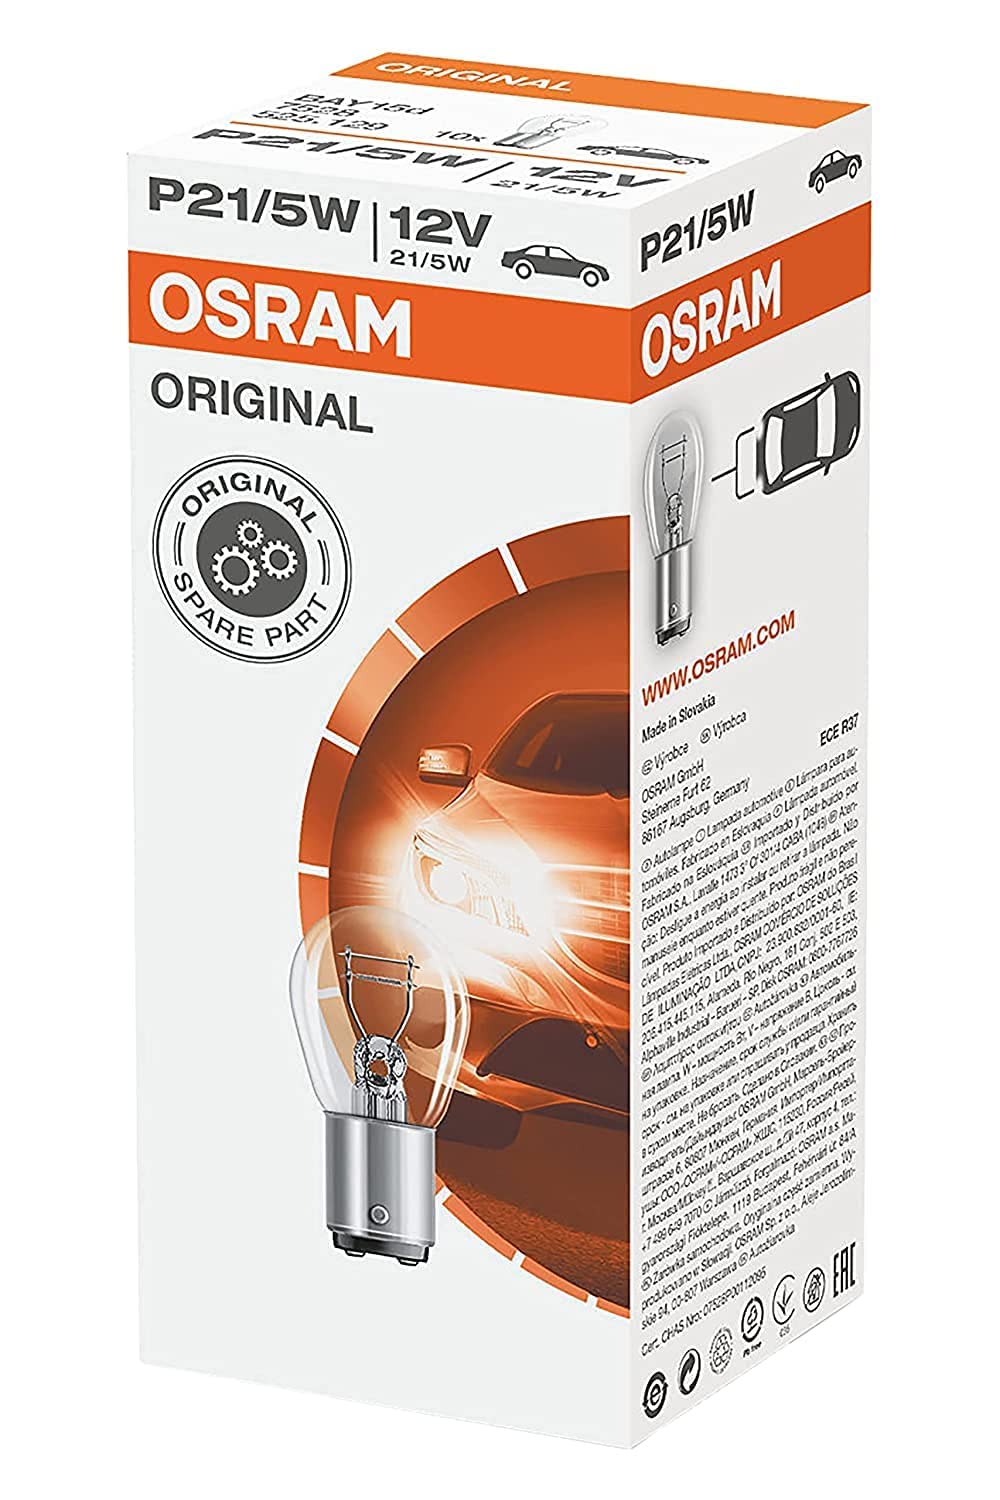 Osram 7528 ORIGINAL P21/5W, Blinklichtlampe, 7528, 12V, 1 Lampe von Osram